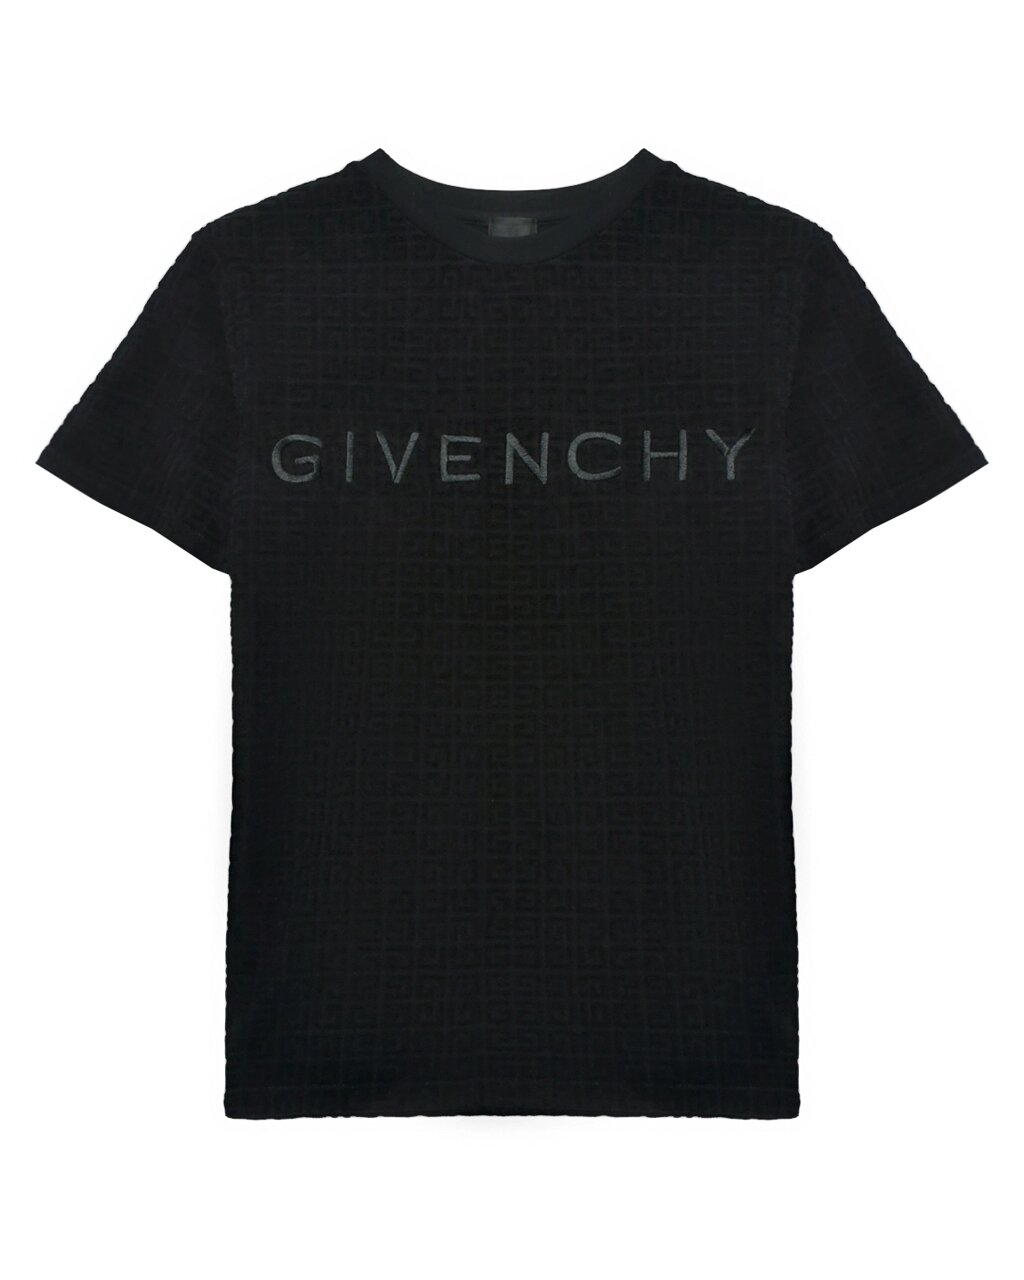 Футболка велюровая со сплошным лого Givenchy от компании Admi - фото 1